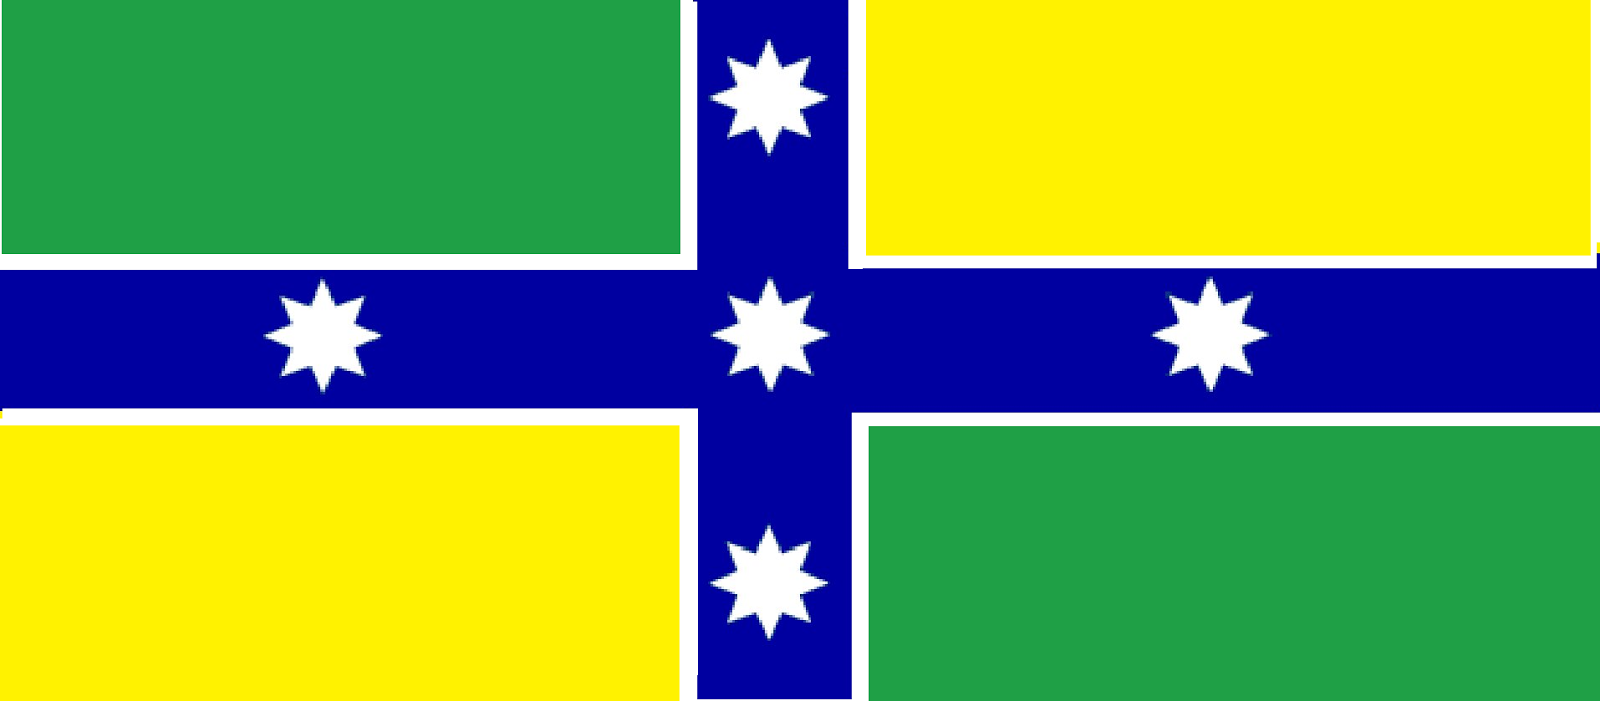 A new flag for Australia?: Back to basics, the flag?